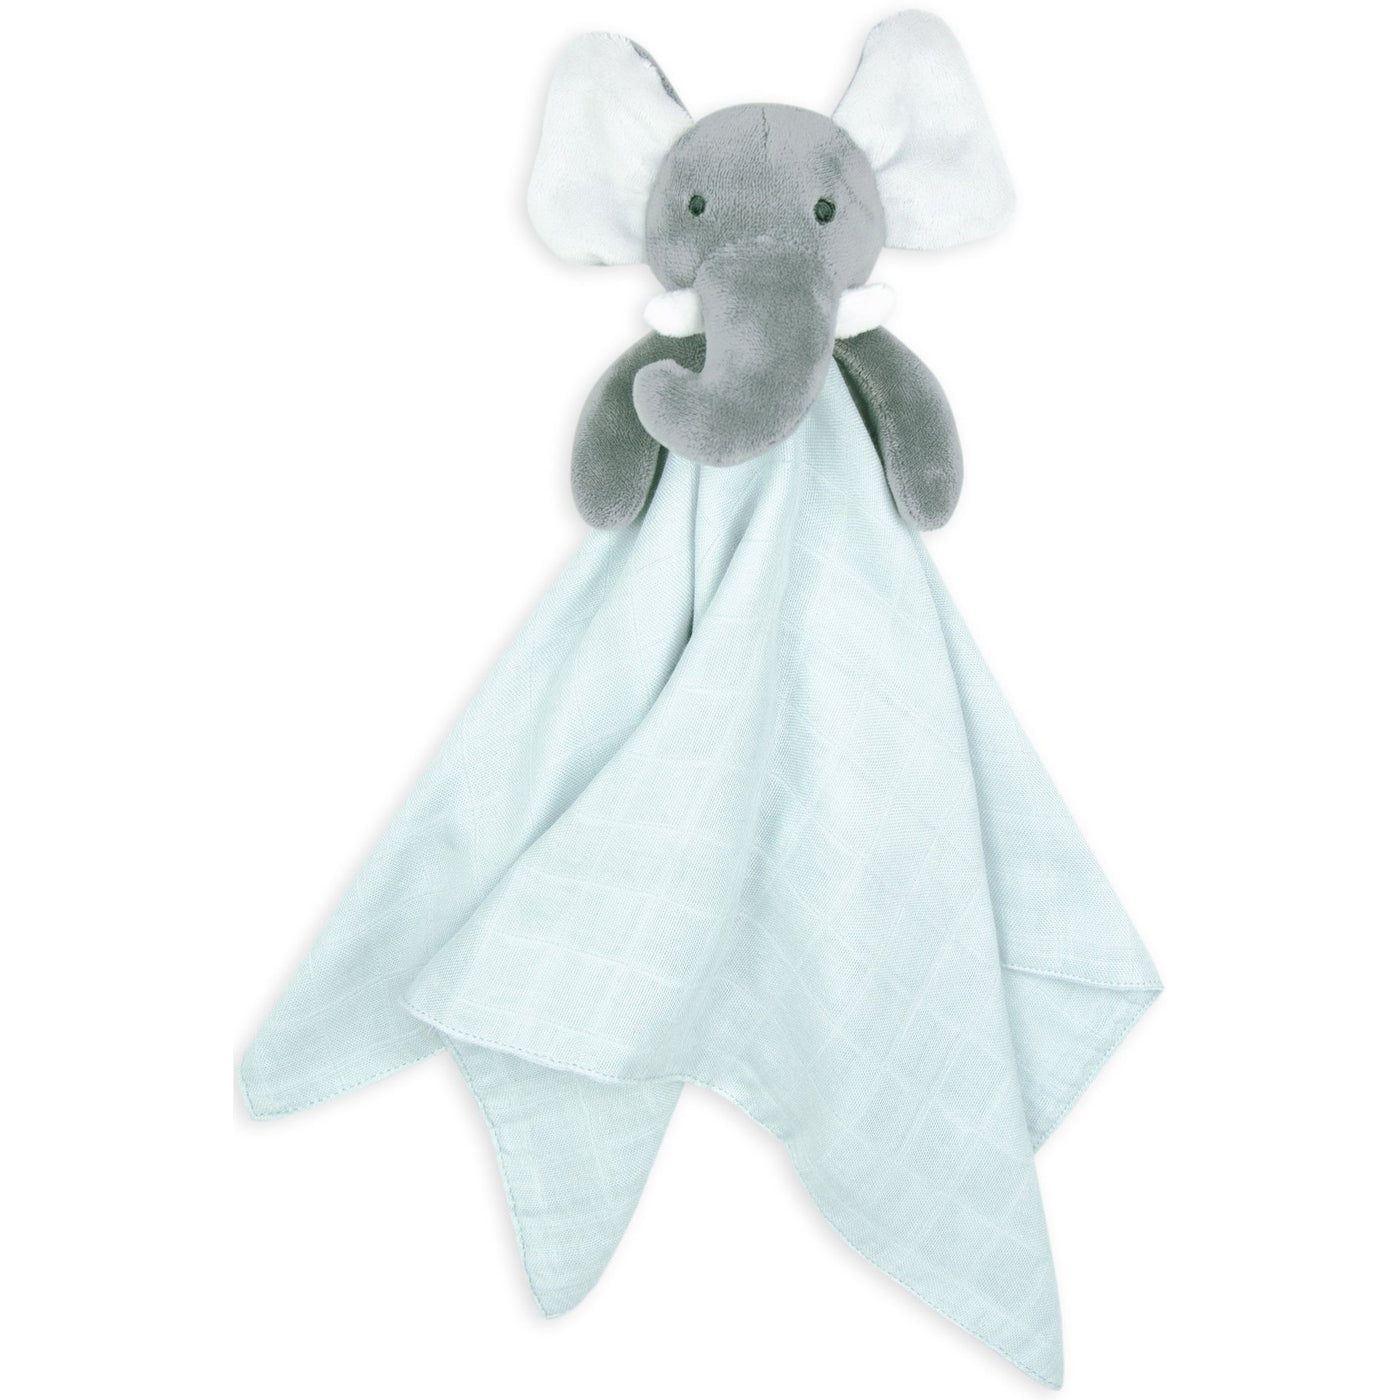 Lovie/Comforter - Erin the Elephant